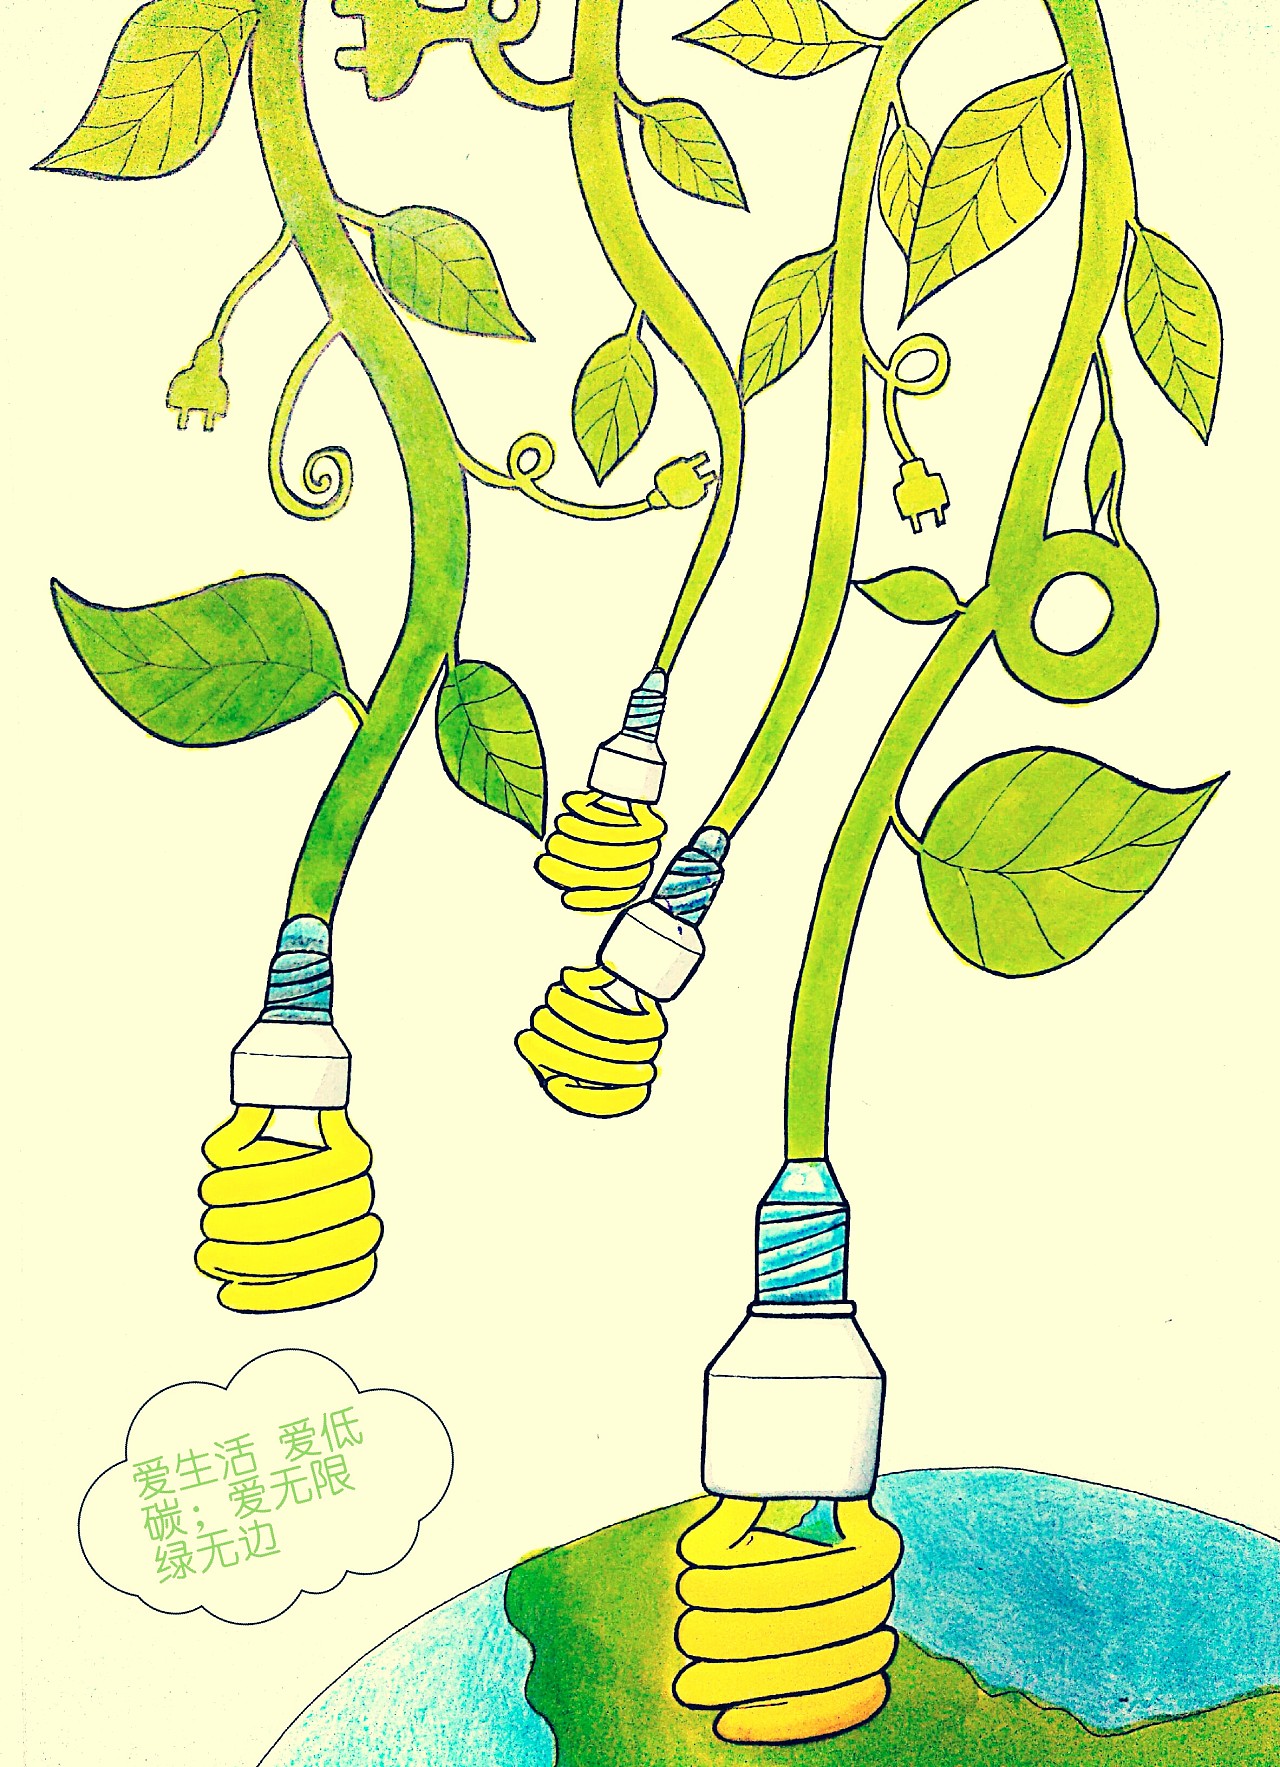 低碳出行环保保护地球地球日绿色手绘插画图片-千库网